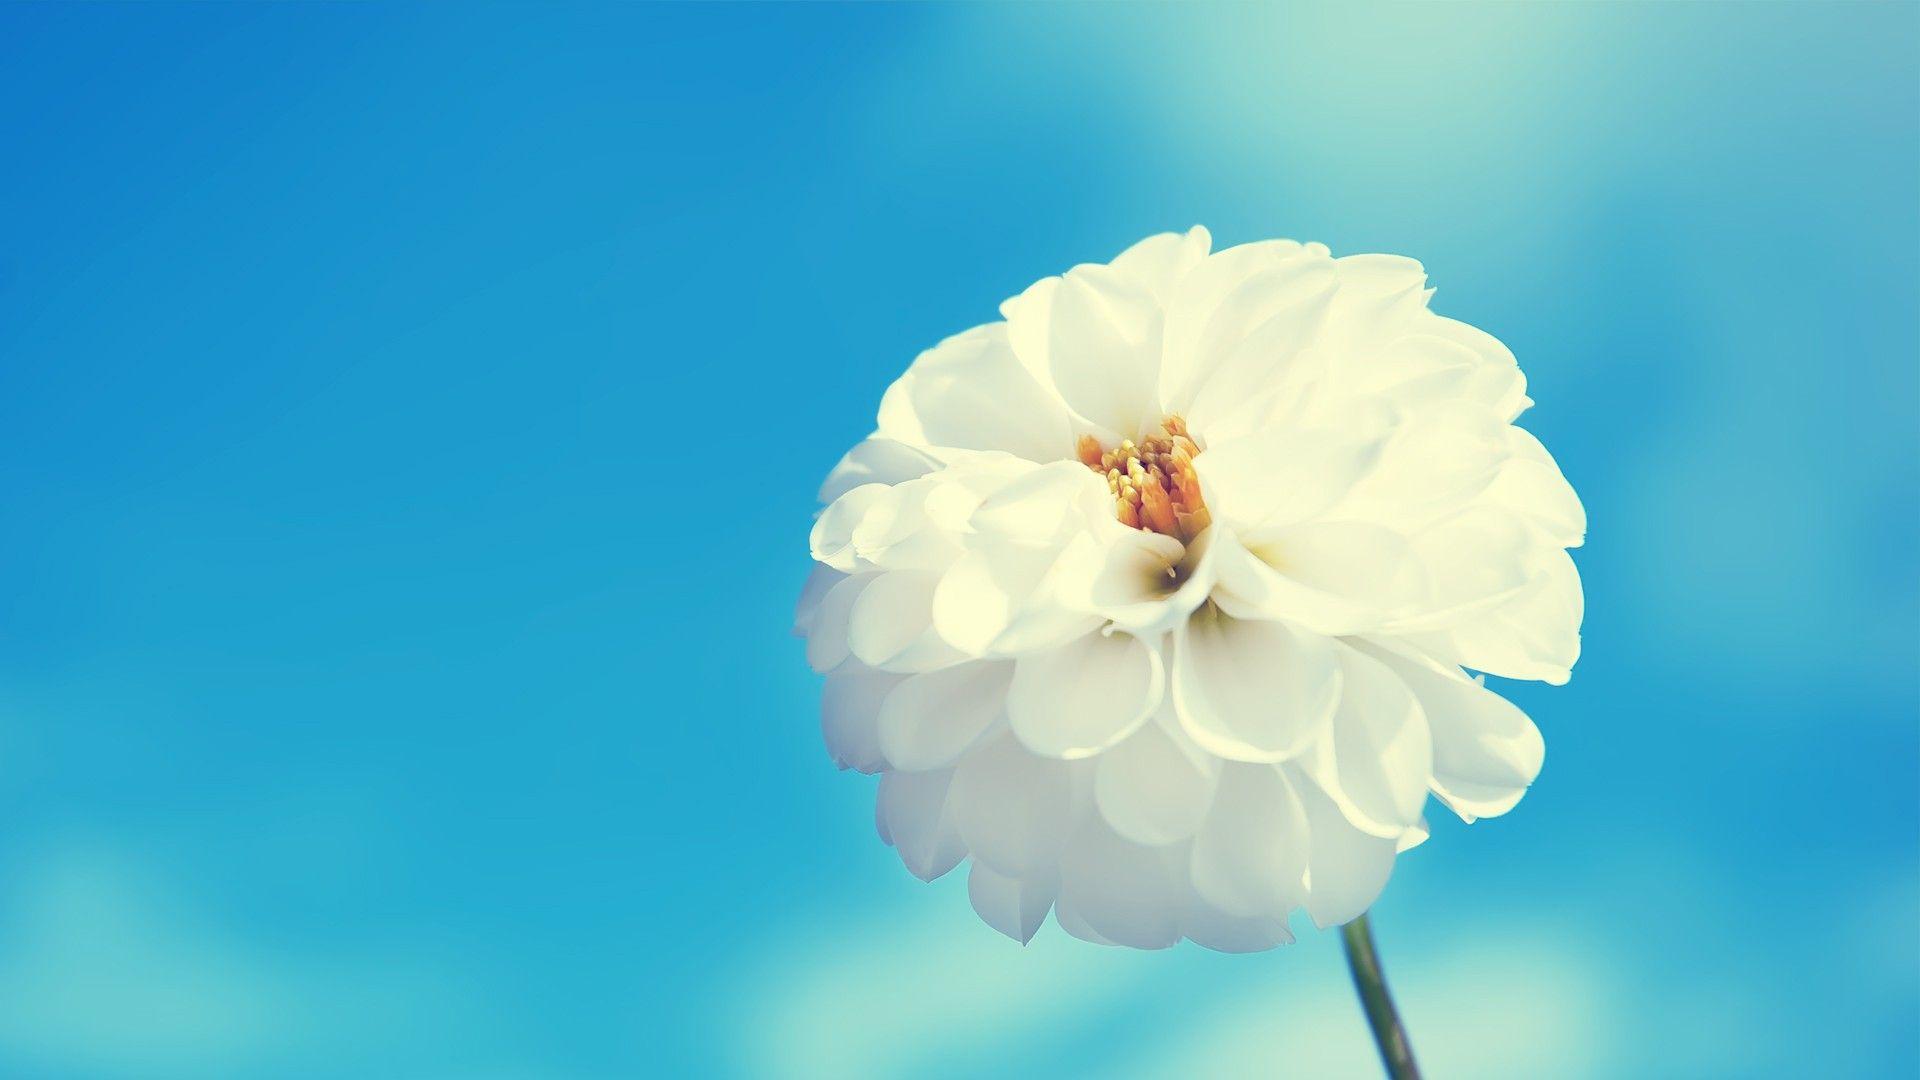 Hoa trắng: Hoa trắng là biểu tượng của tình yêu, sự trong sáng và thanh tịnh. Những bông hoa trắng tinh khôi sẽ giúp cho không gian của bạn trở nên tràn đầy sức sống và thu hút. Hãy cùng chiêm ngưỡng và khám phá những bức hình hoa trắng đẹp nhất để tưng bừng đón mùa xuân và yêu đời hơn nữa.